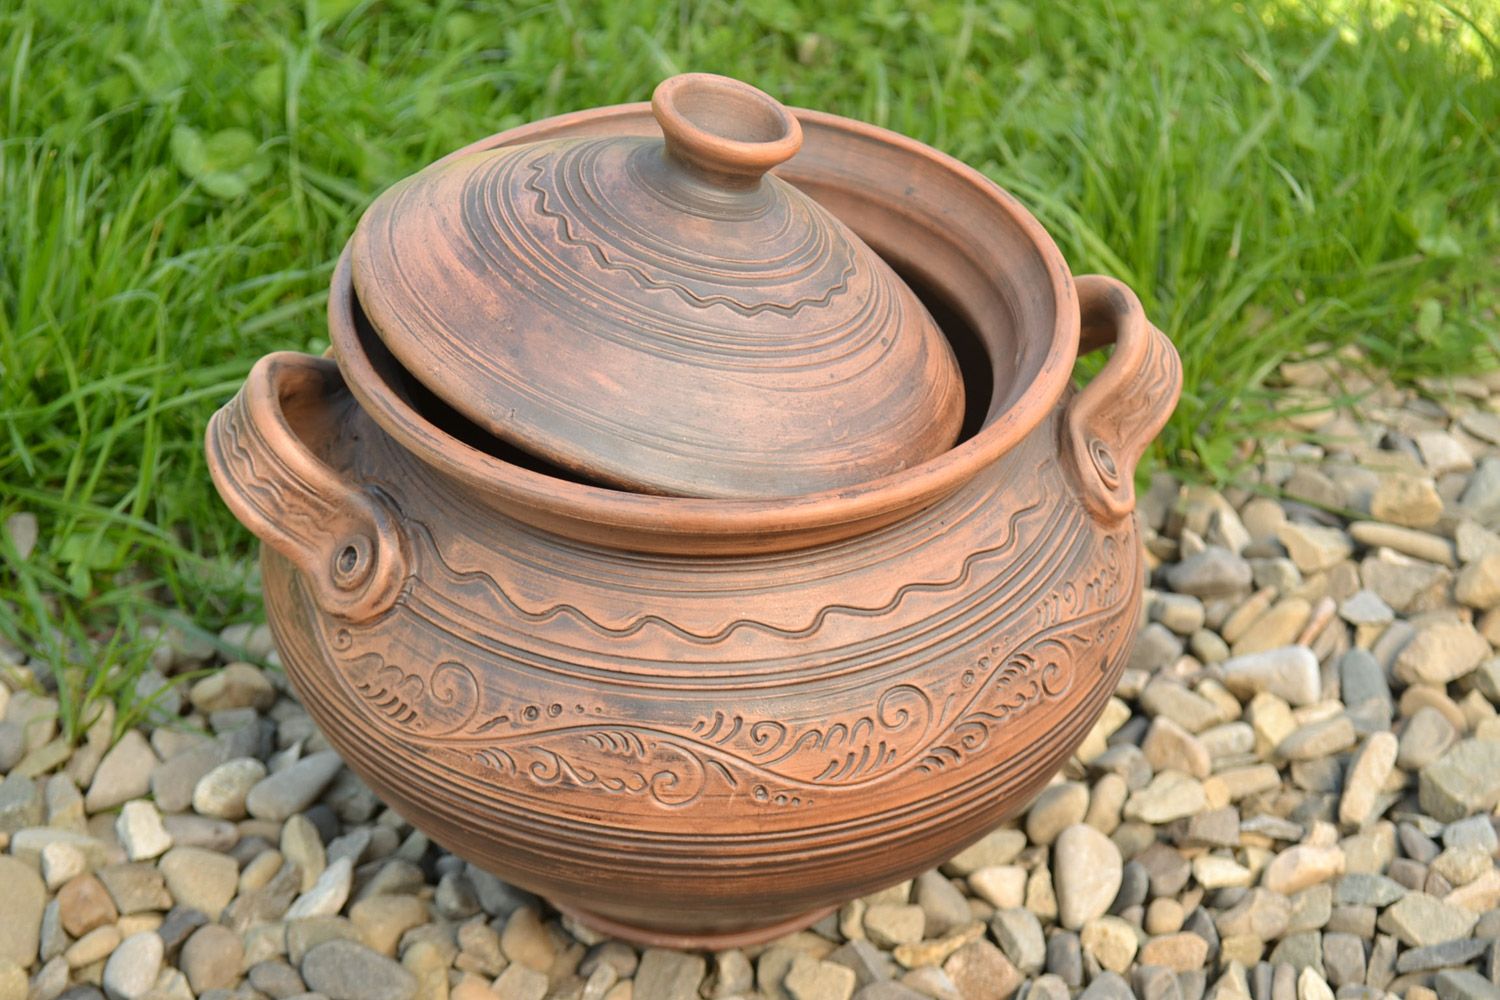 Großer handmade Keramik Topf mit Deckel Handarbeit 4 l in Braun für Backen  foto 1